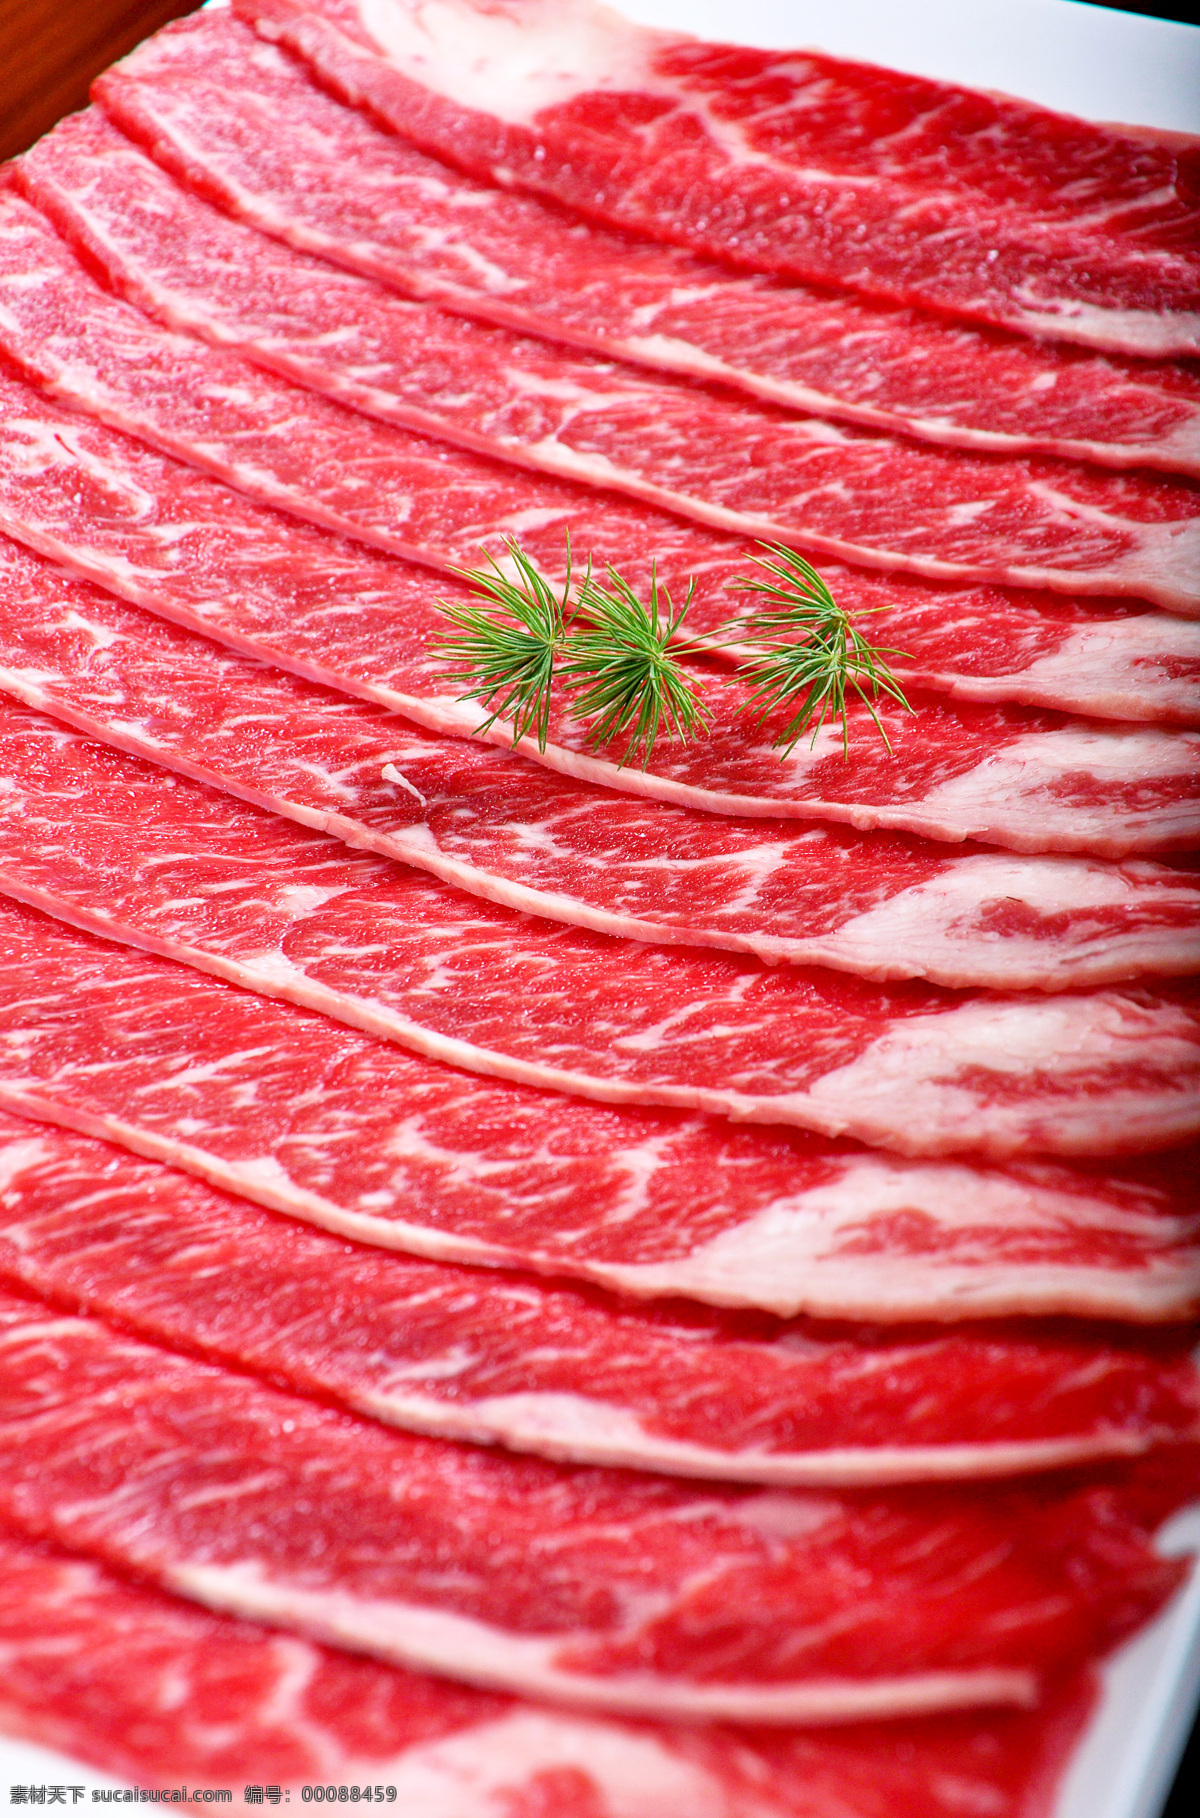 和牛肉 牛肉 和牛 烧烤 日本料理 美食 传统美食 餐饮美食